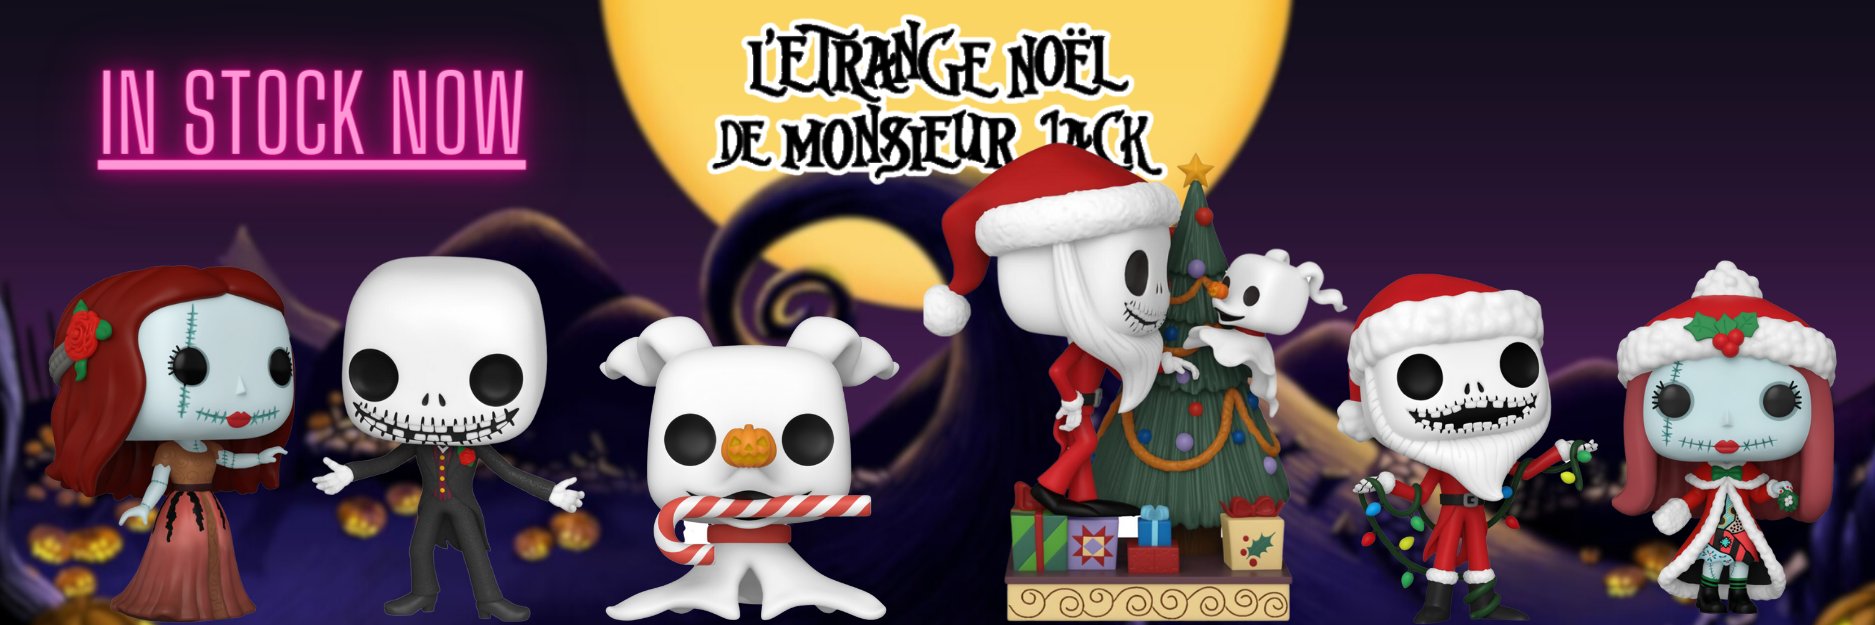 L'ETRANGE NOEL DE MONSIEUR JACK - POP Disney N° 1404 - Maire (Tarot) :  : Bobble Head POP Funko DISNEY